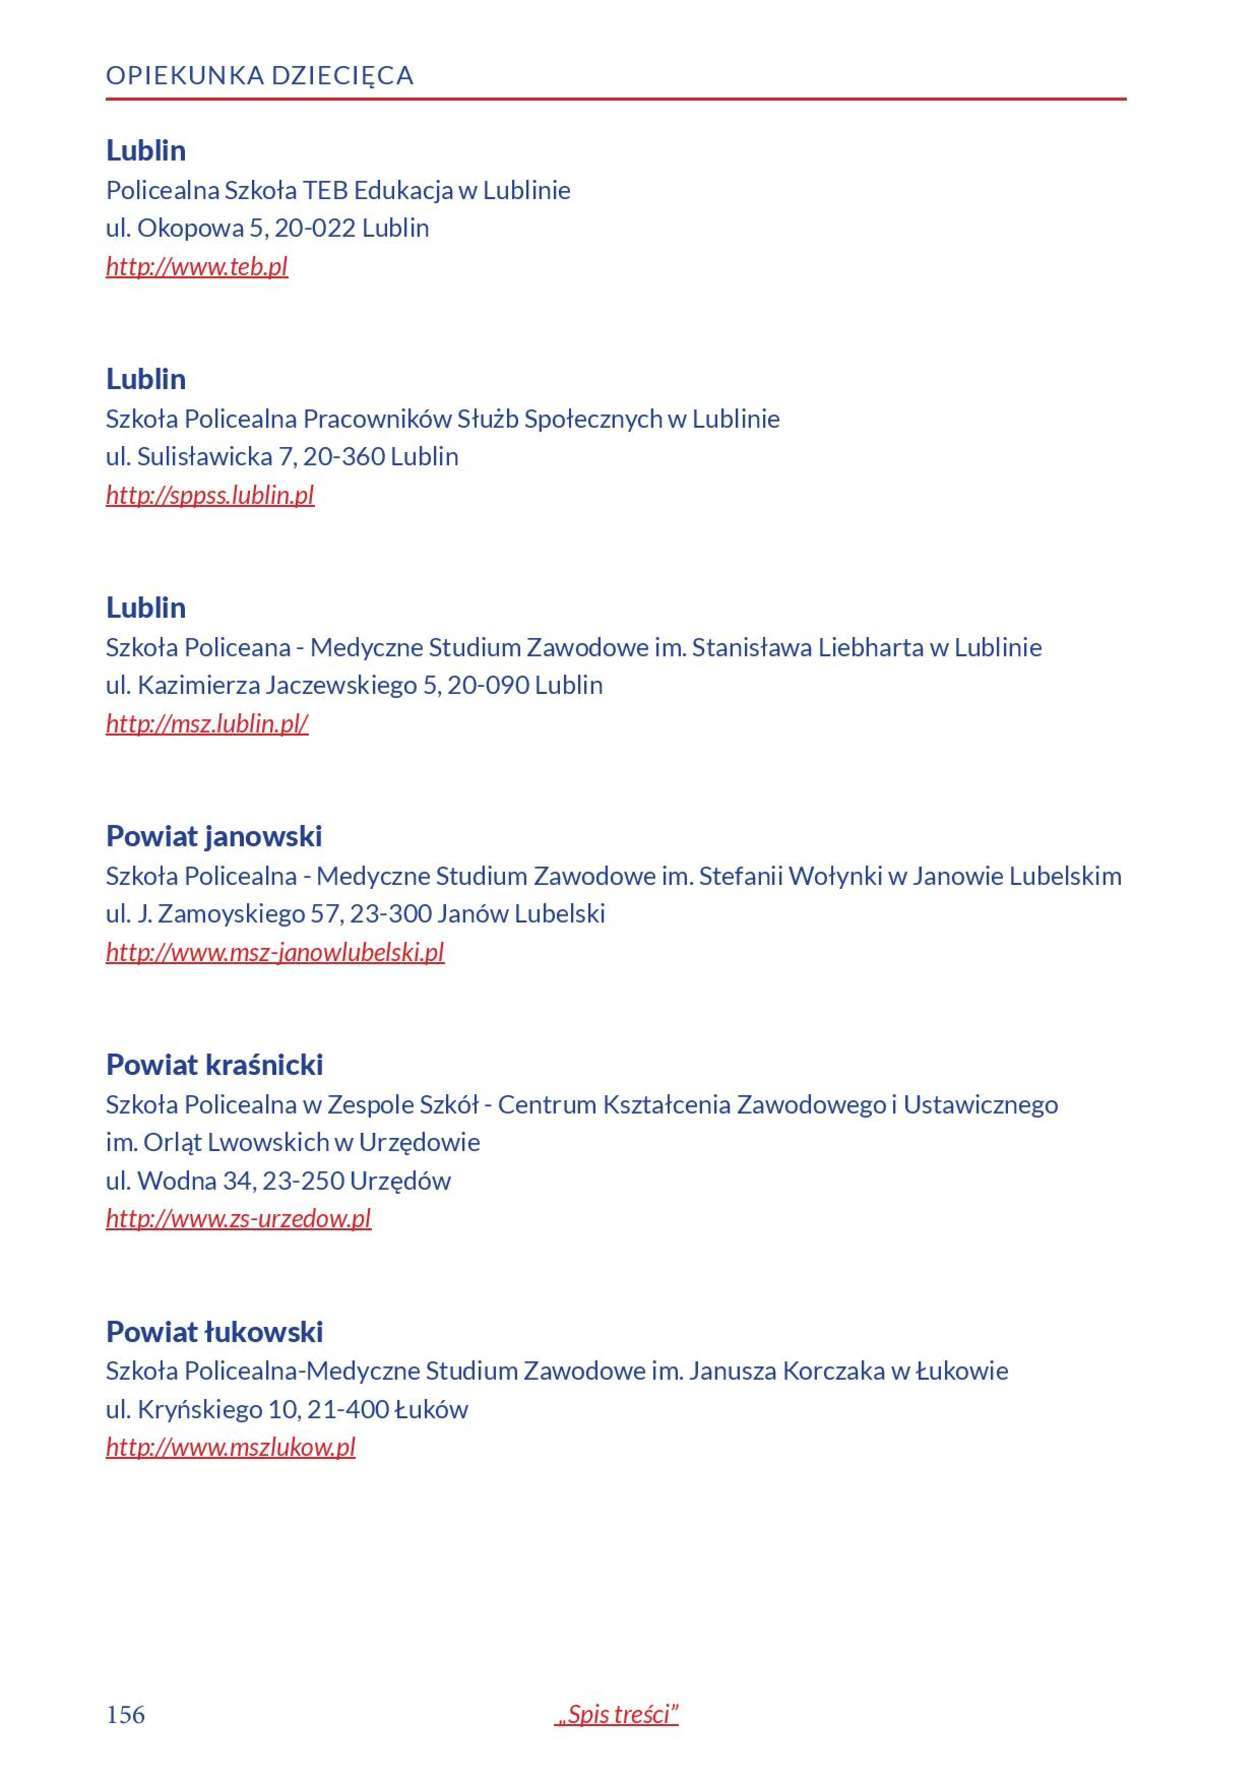  Informator o zawodach 2018/2019 w woj. lubelskim. Część 1 (zdjęcie 154) - Autor: Kuratorium Oświaty w Lublinie